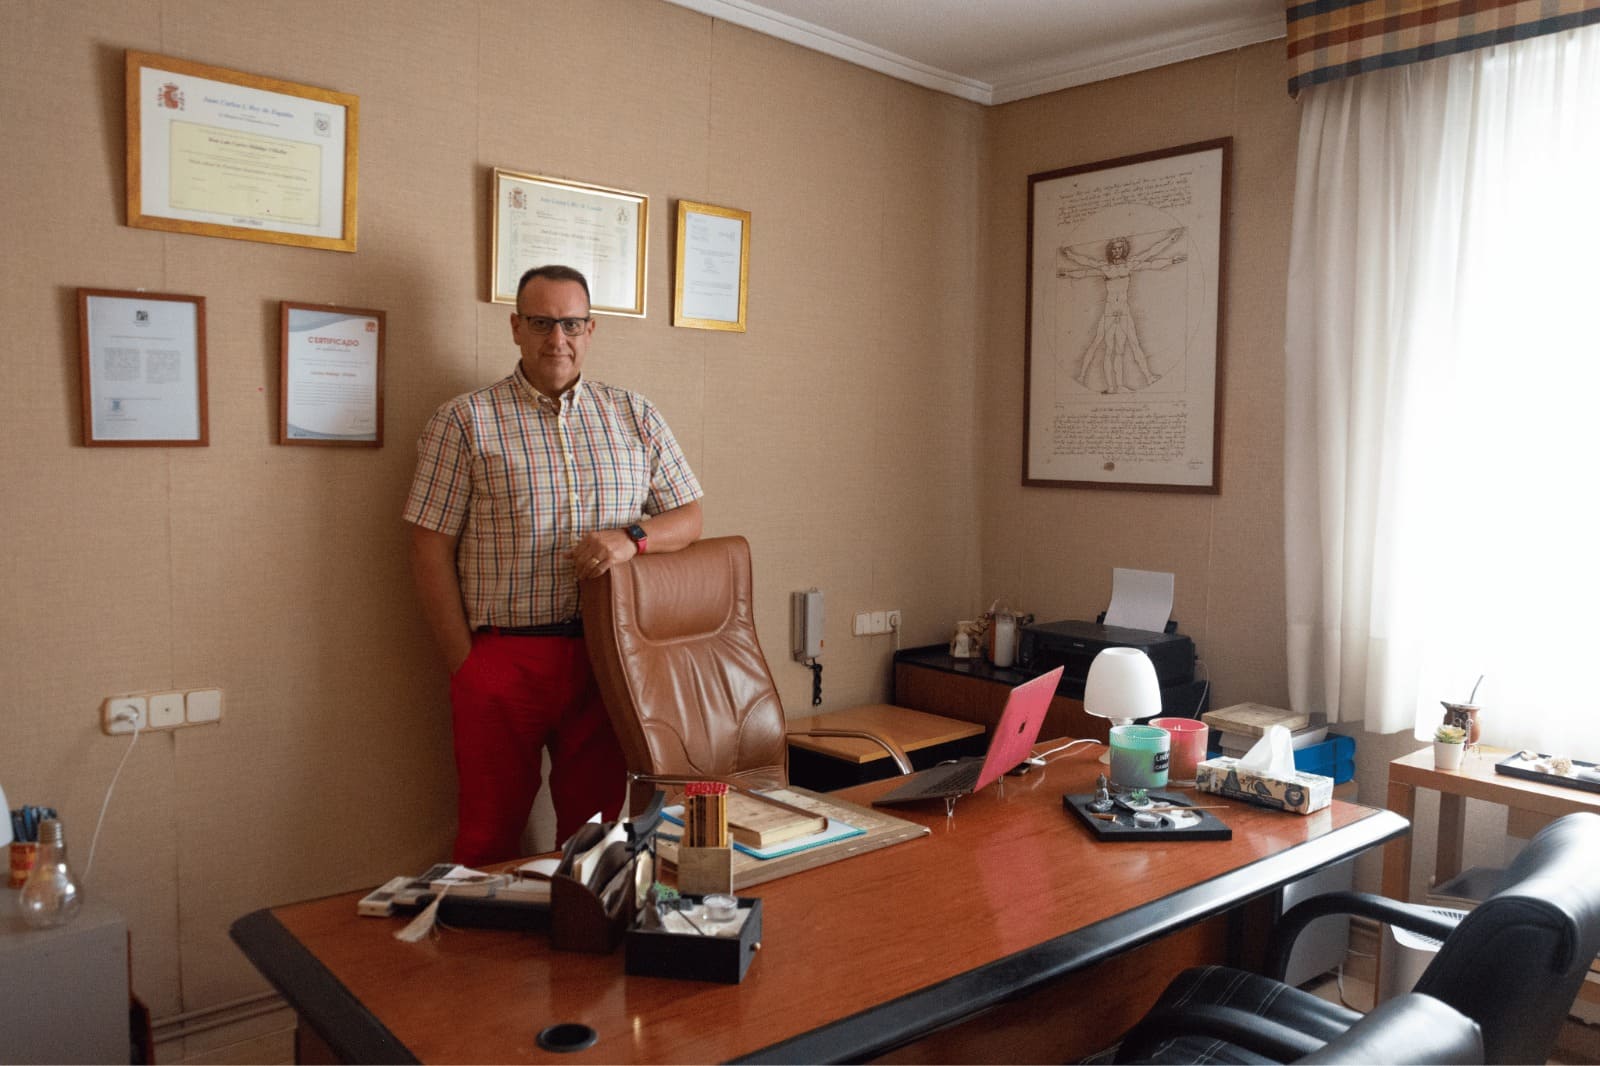 Carlos Hidalgo, psicólogo en Castellón con gran experiencia y formación, de pie al lado de la silla de su despacho donde realiza las sesiones de terapia.